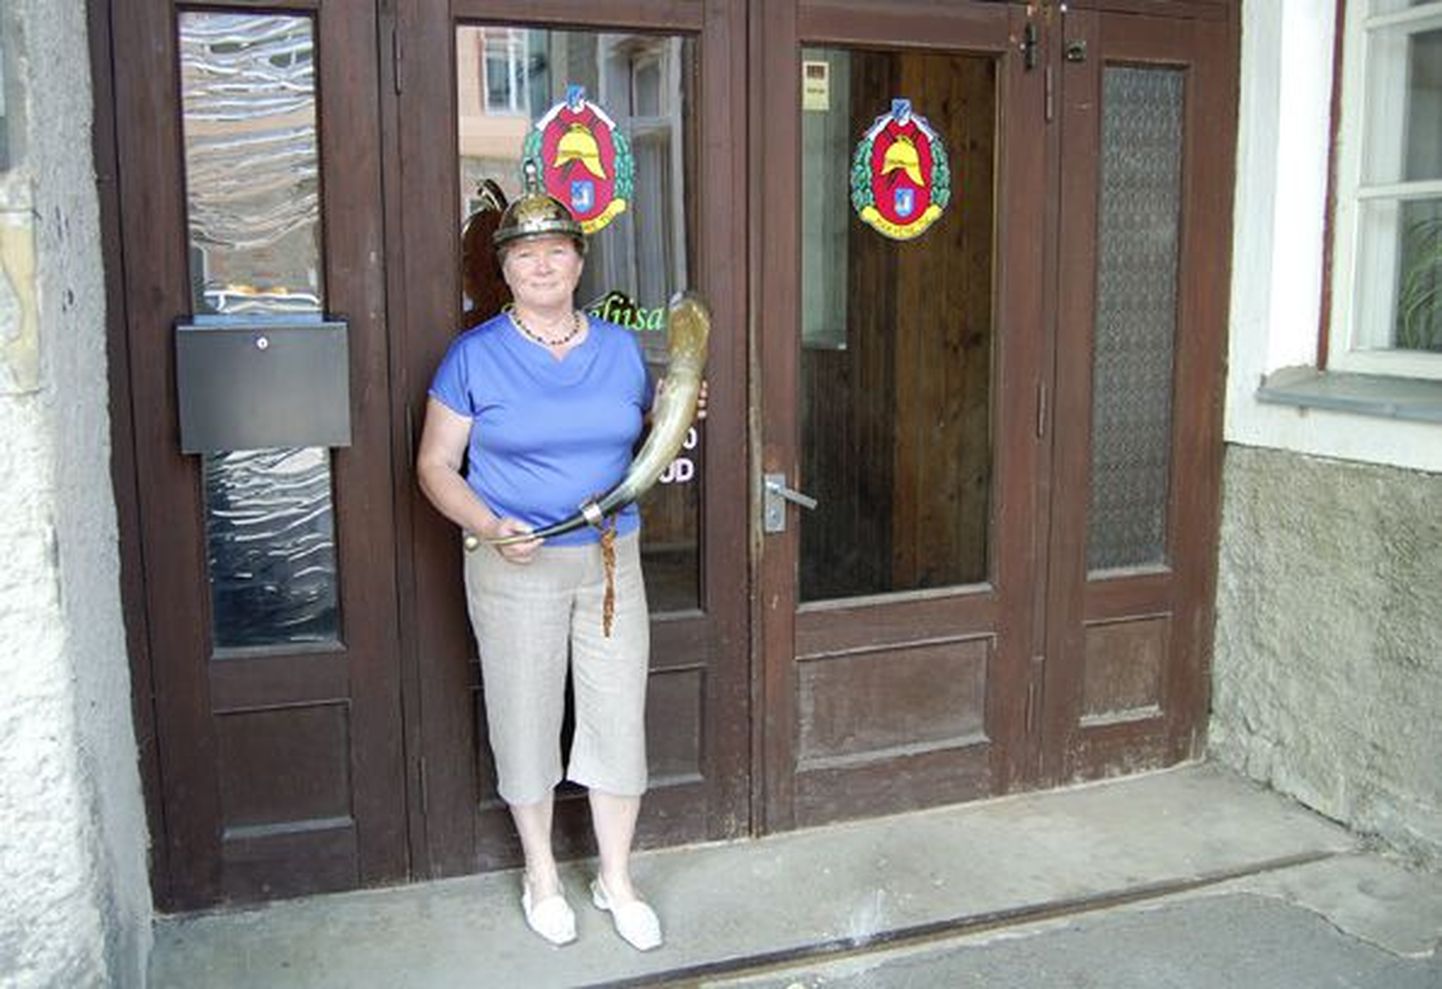 Kingiks saadud sarve ja tuletõrjepealiku uhket kiivrit näitav Mari Rajasalu ootab huvilisi sel reedel sisse astuma tuletõrjeühingu uksest Rakveres Pikk tn 51.